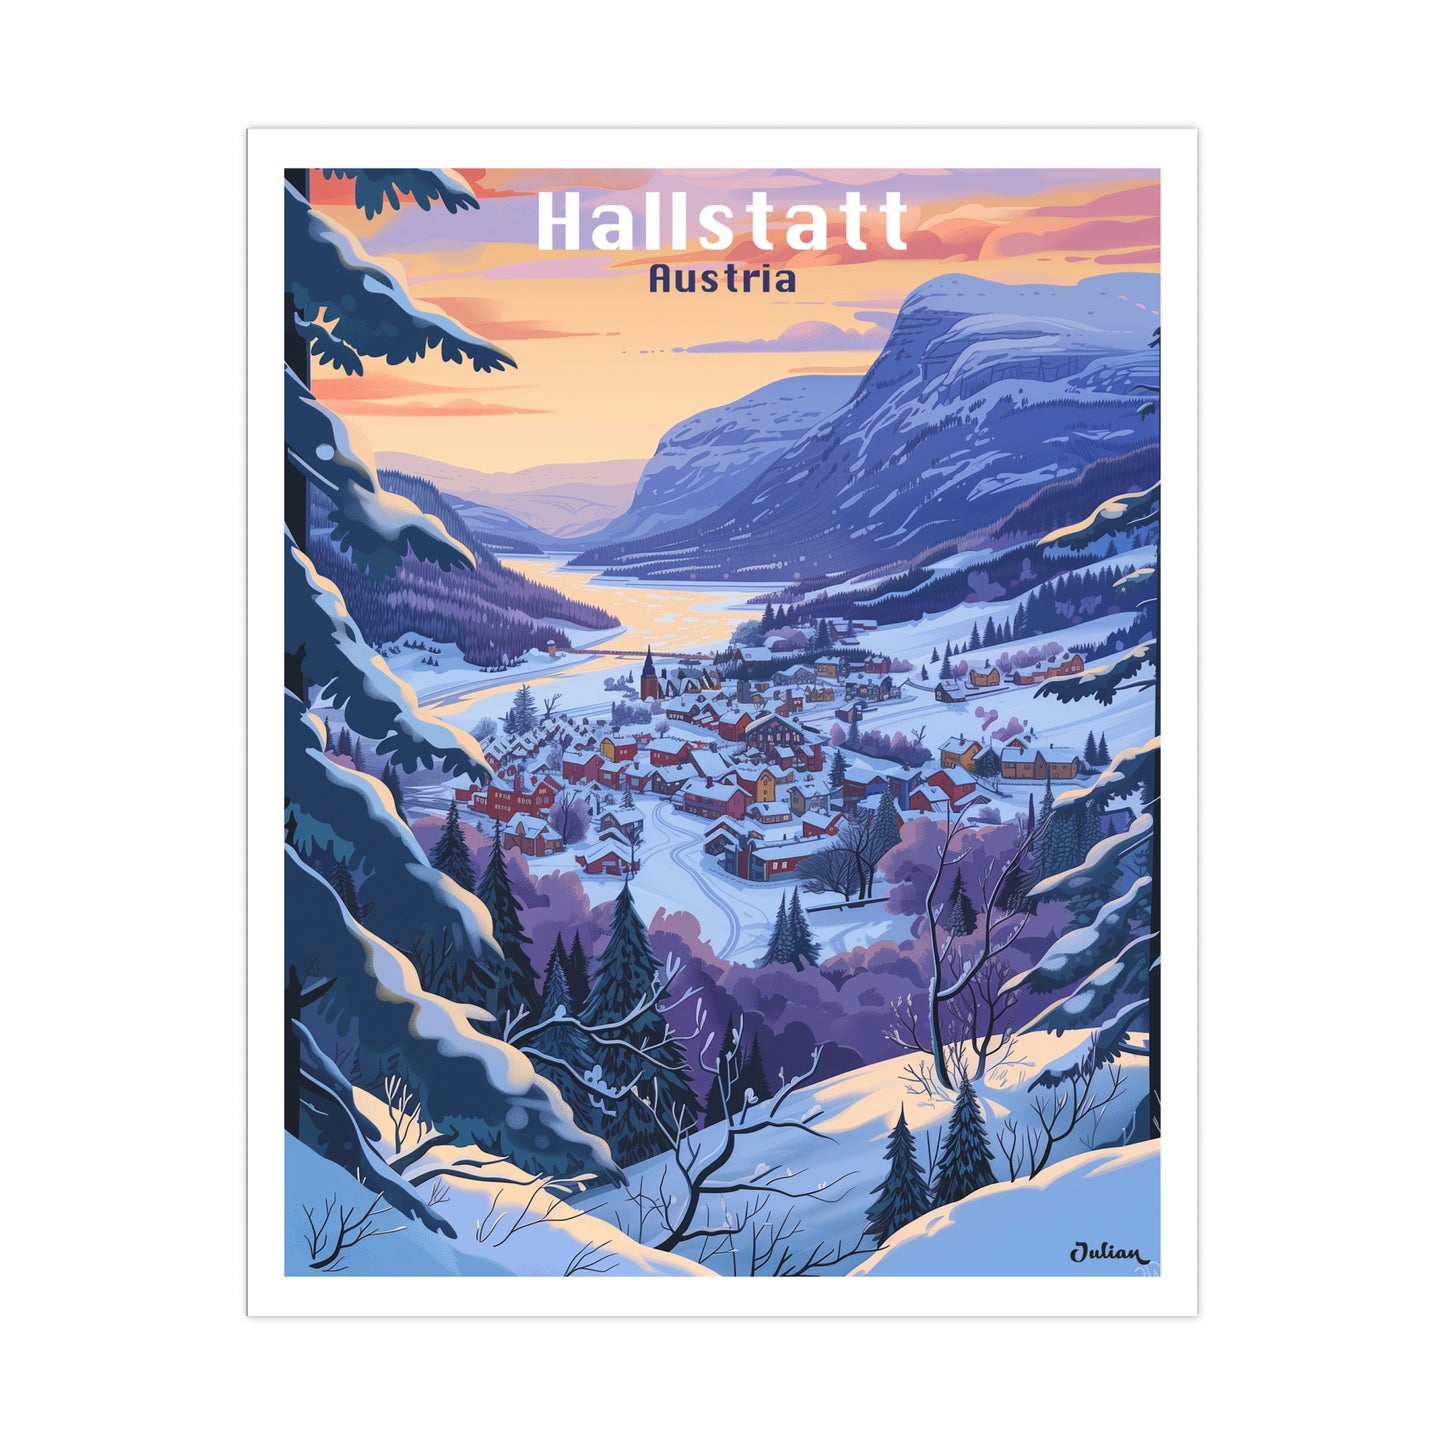 Hallstatt, Austria Travel Poster